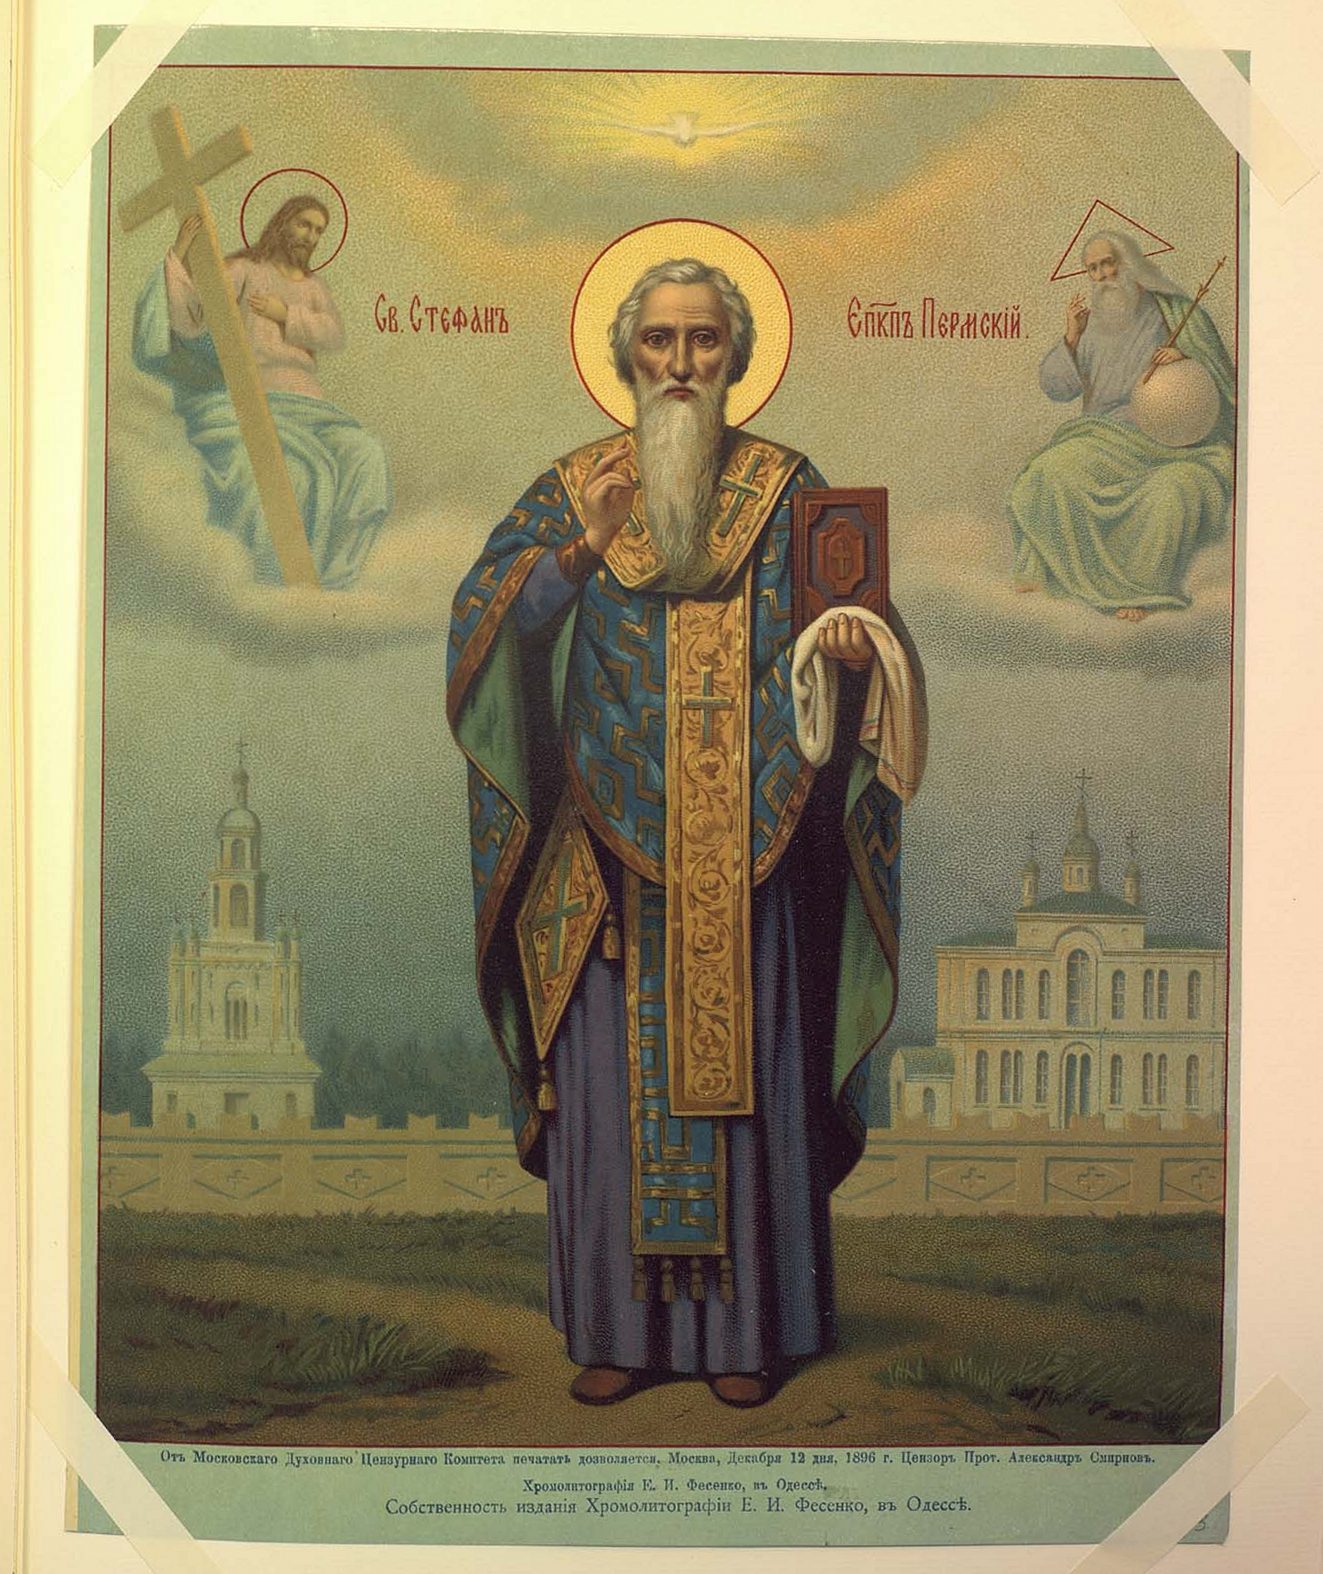 Альбом изображений святых икон издания хромолитографии Е. И. Фесенко в Одессе